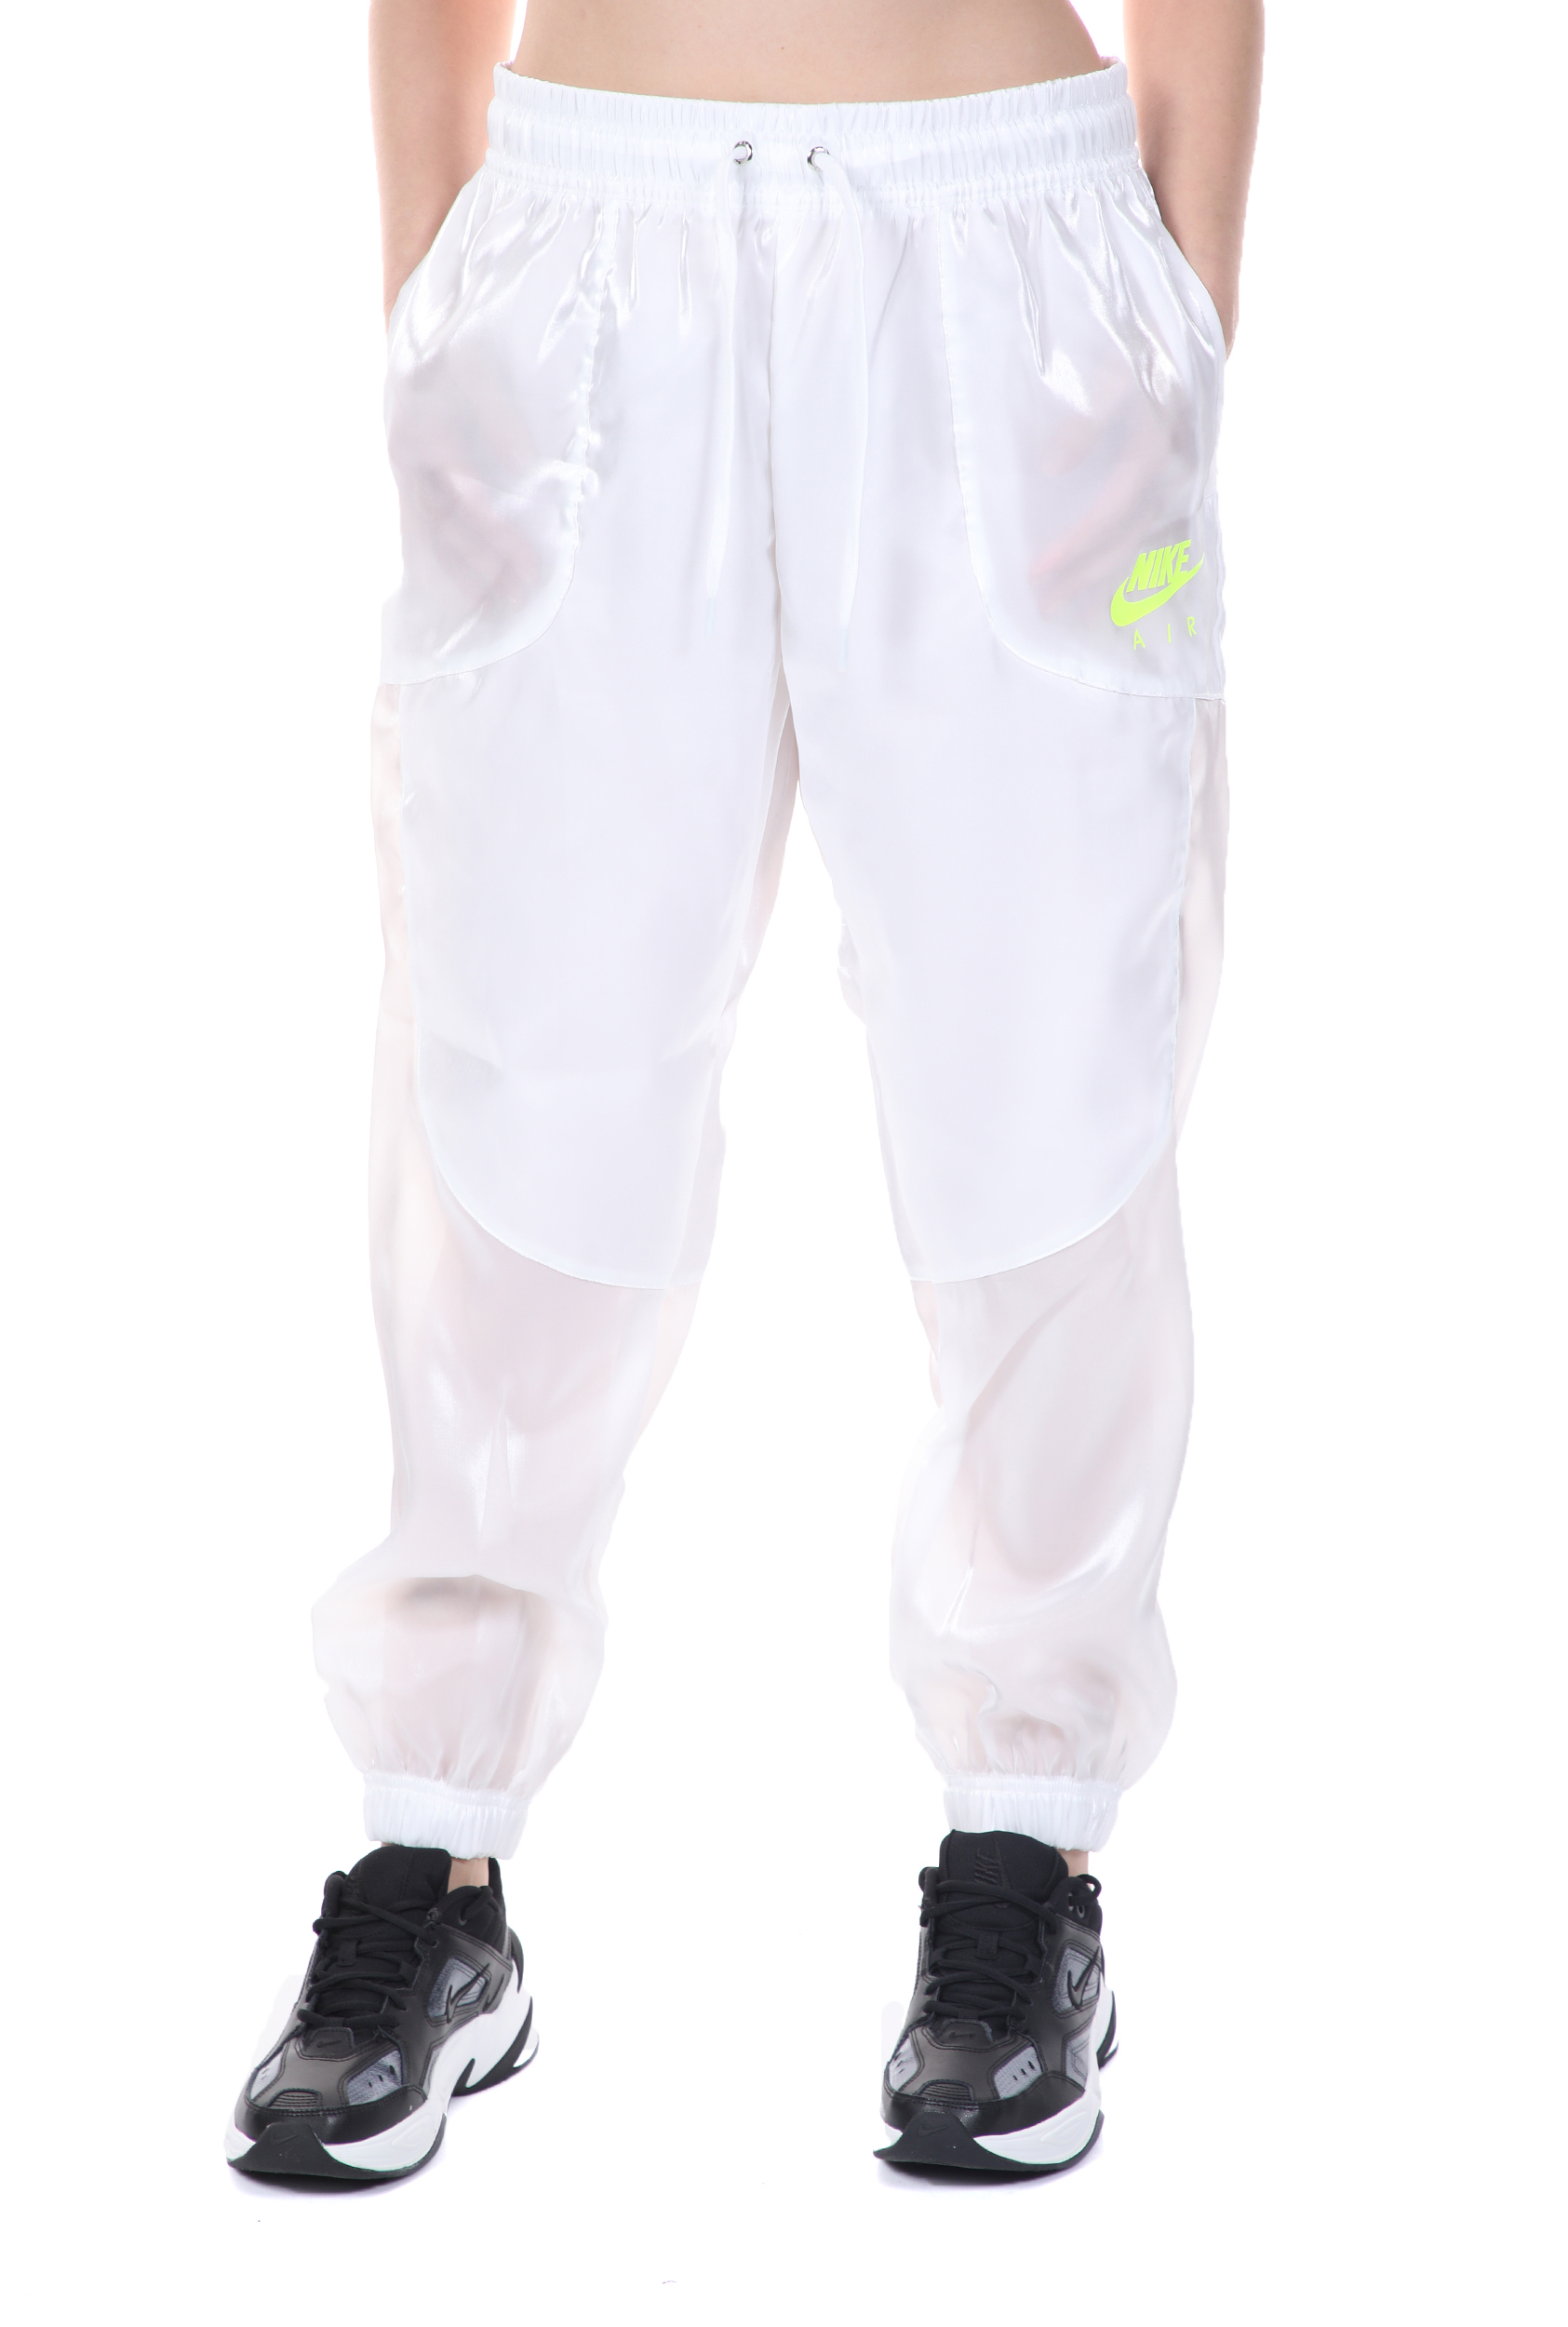 NIKE – Γυναικειο παντελονι φορμας NIKE NSW AIR PANT SHEEN λευκο